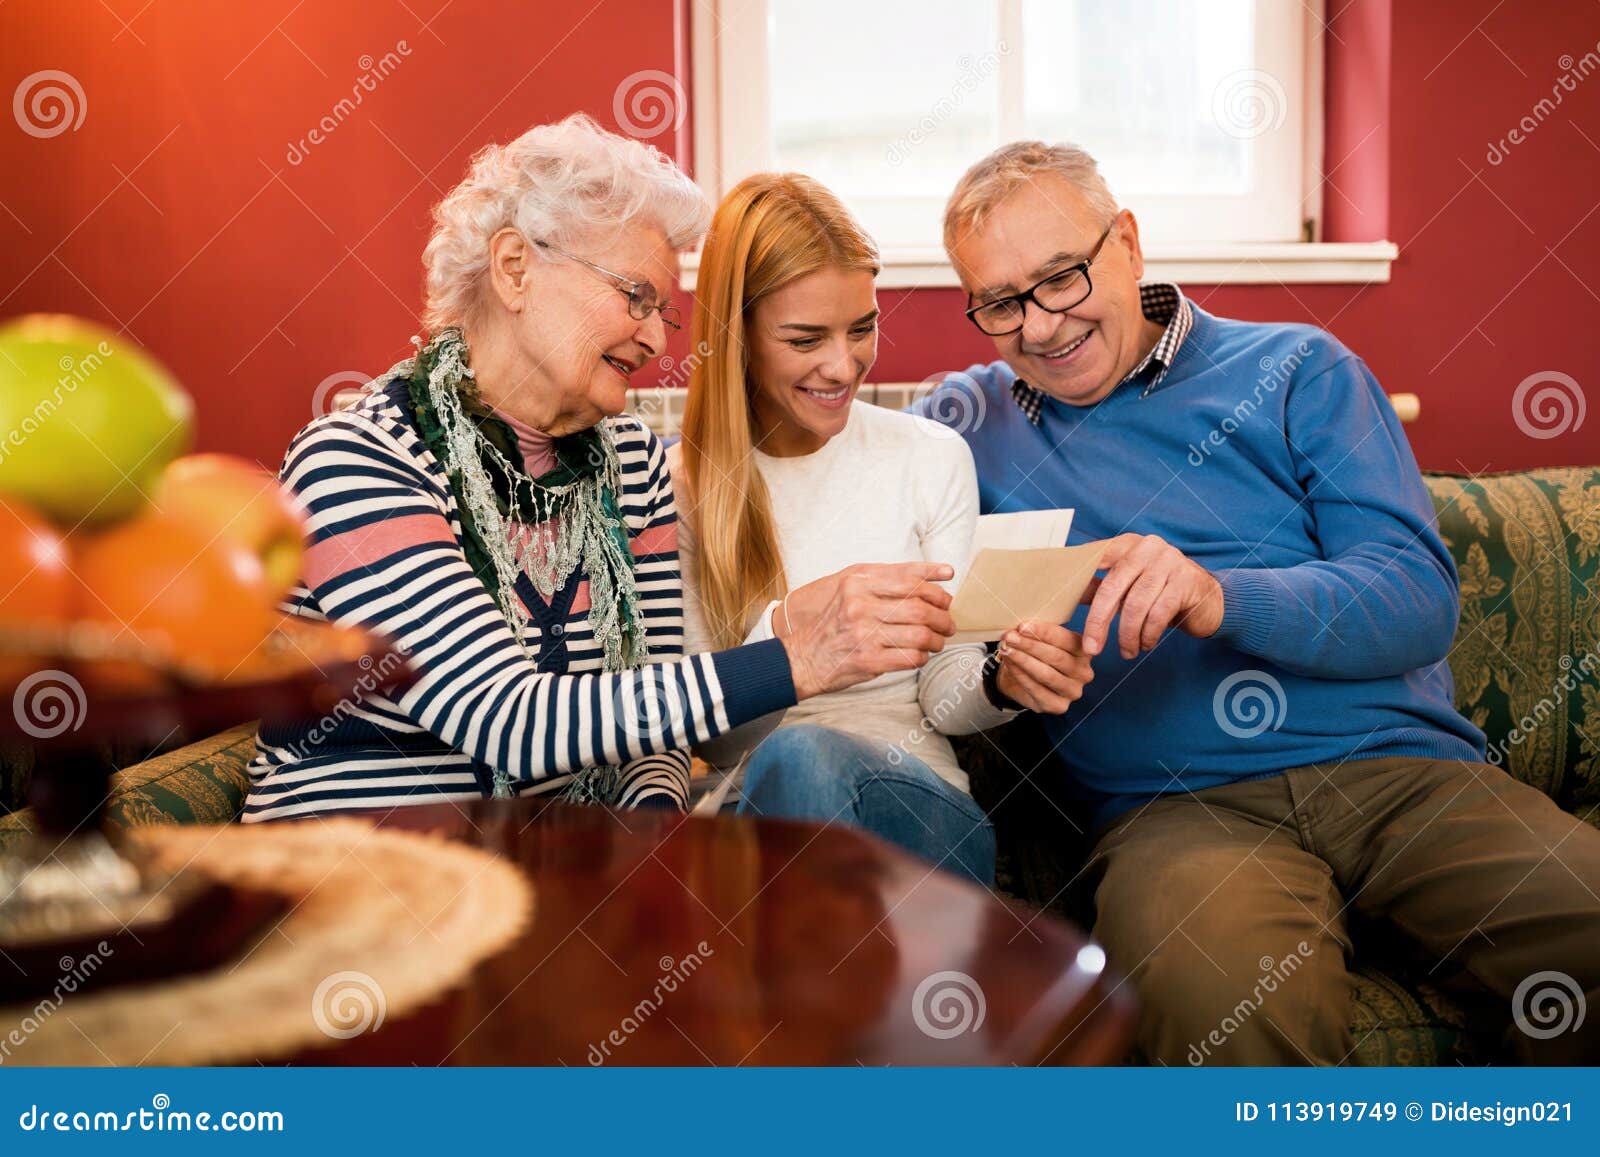 I visit my granny next week. Время проведения с бабушкой. Девочка навещает дедушку. Как провести время с бабушкой.